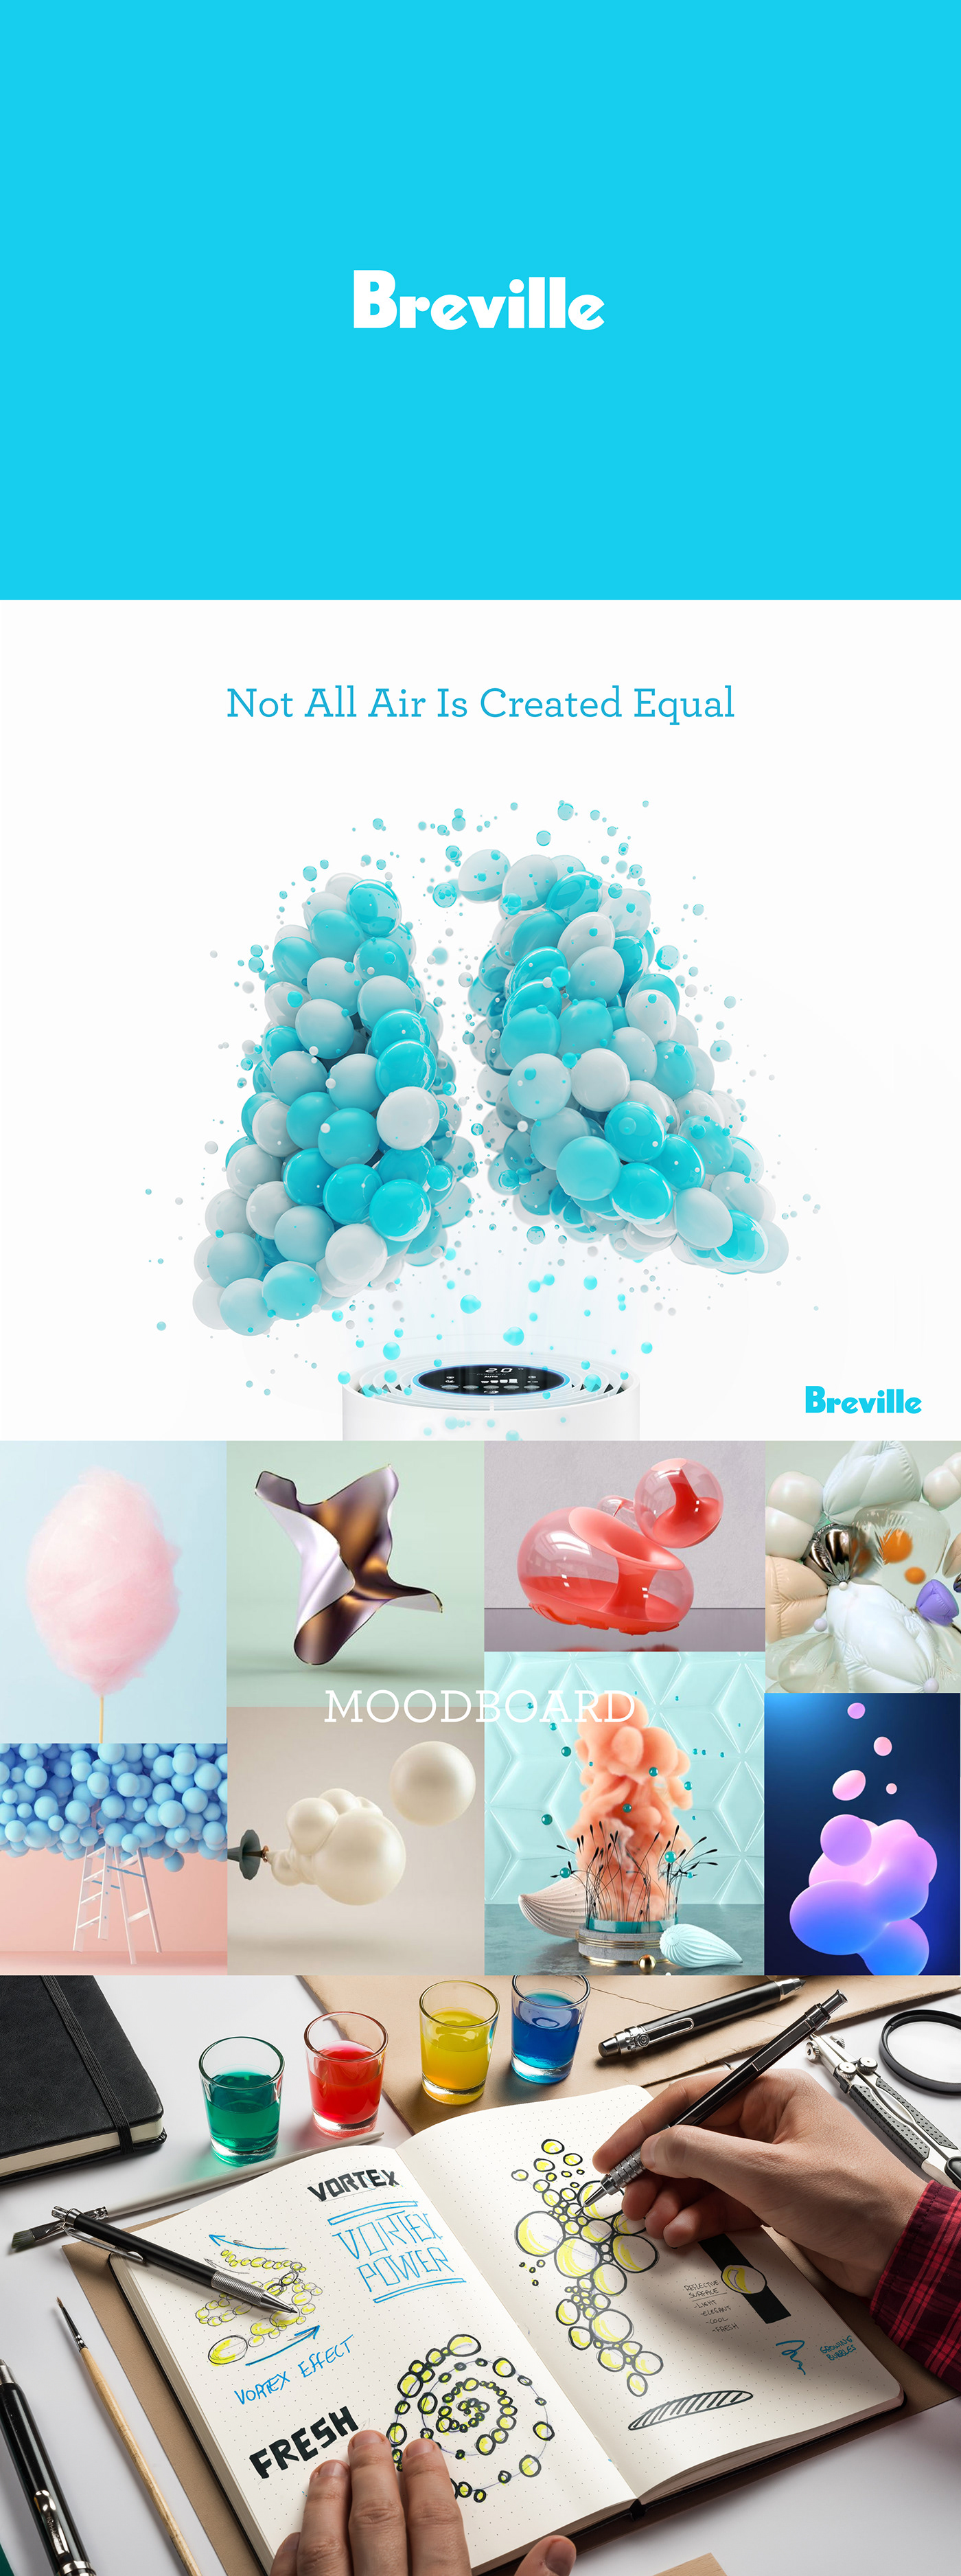 3D air Australia branding  breville bubbles particles purifiers UI ux